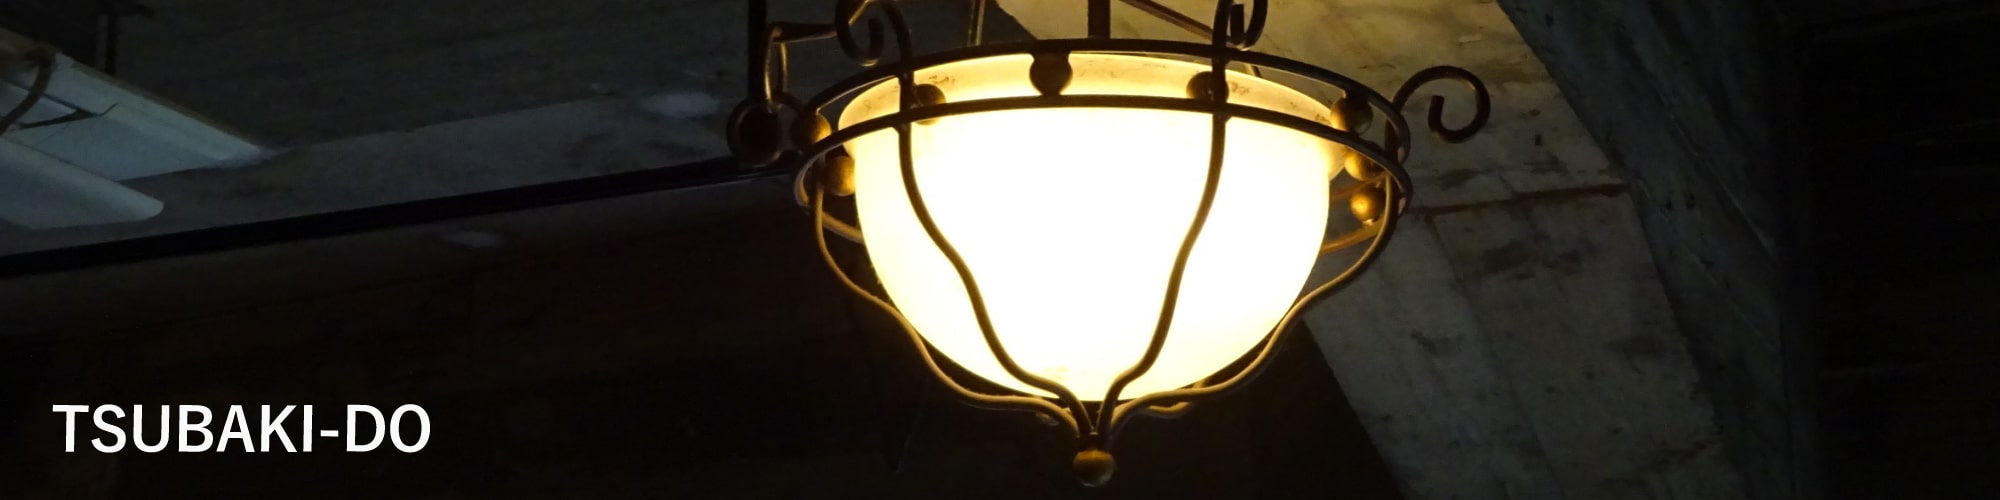 椿堂ビルテナント照明